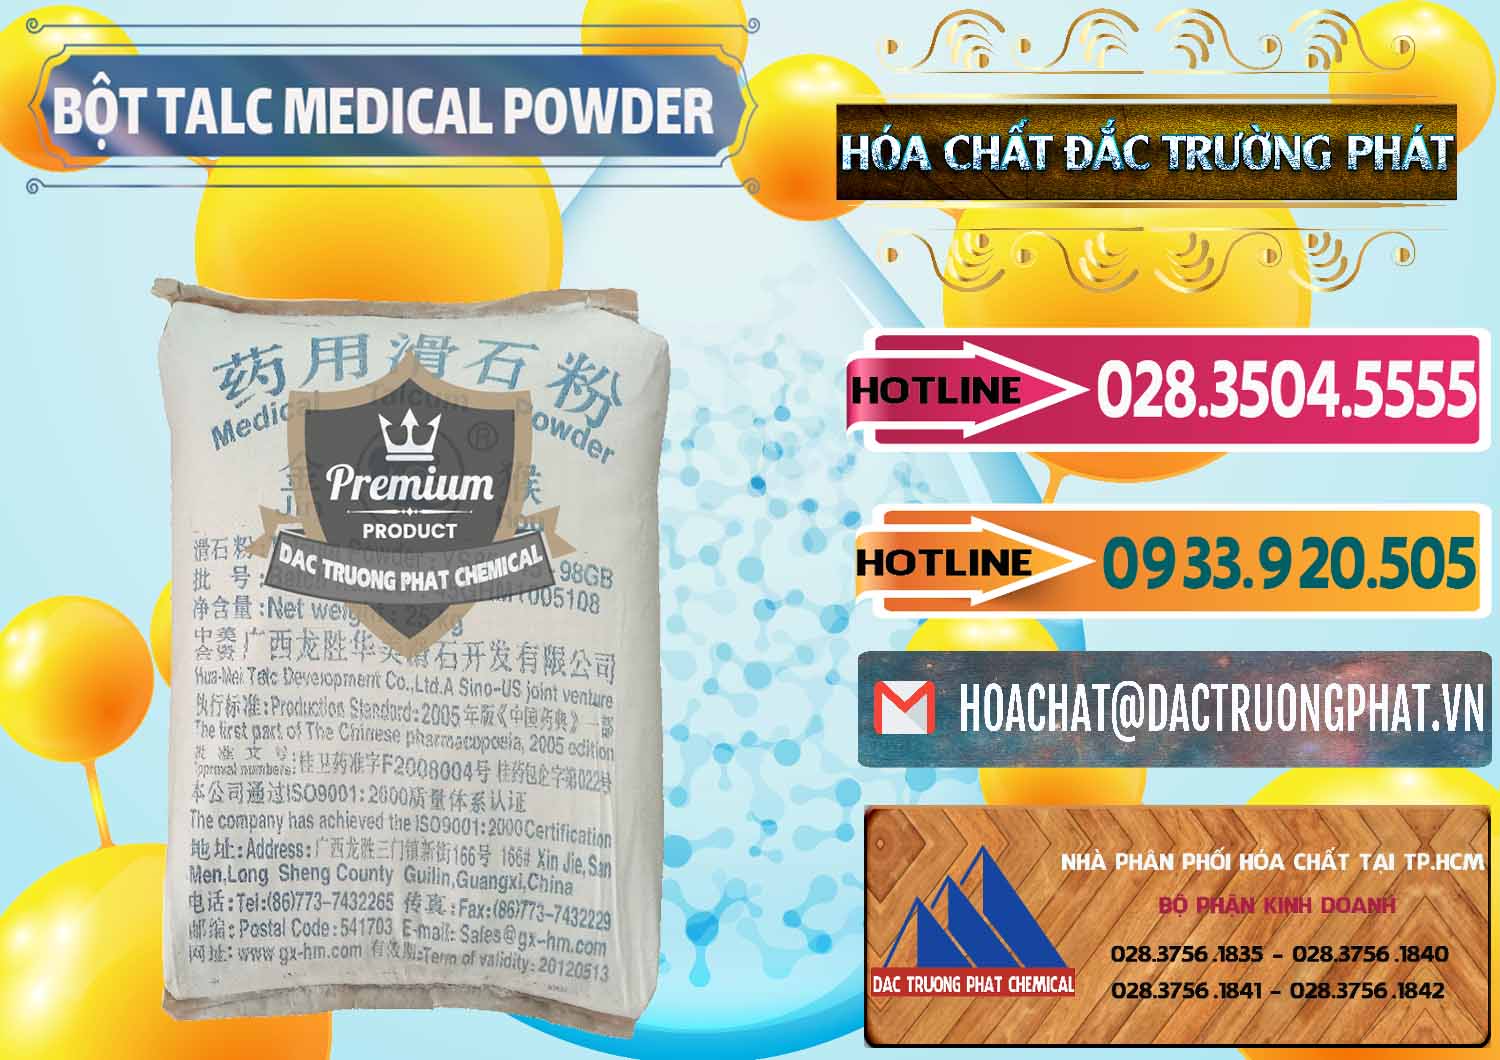 Chuyên nhập khẩu ( bán ) Bột Talc Medical Powder Trung Quốc China - 0036 - Nhà phân phối ( kinh doanh ) hóa chất tại TP.HCM - dactruongphat.vn